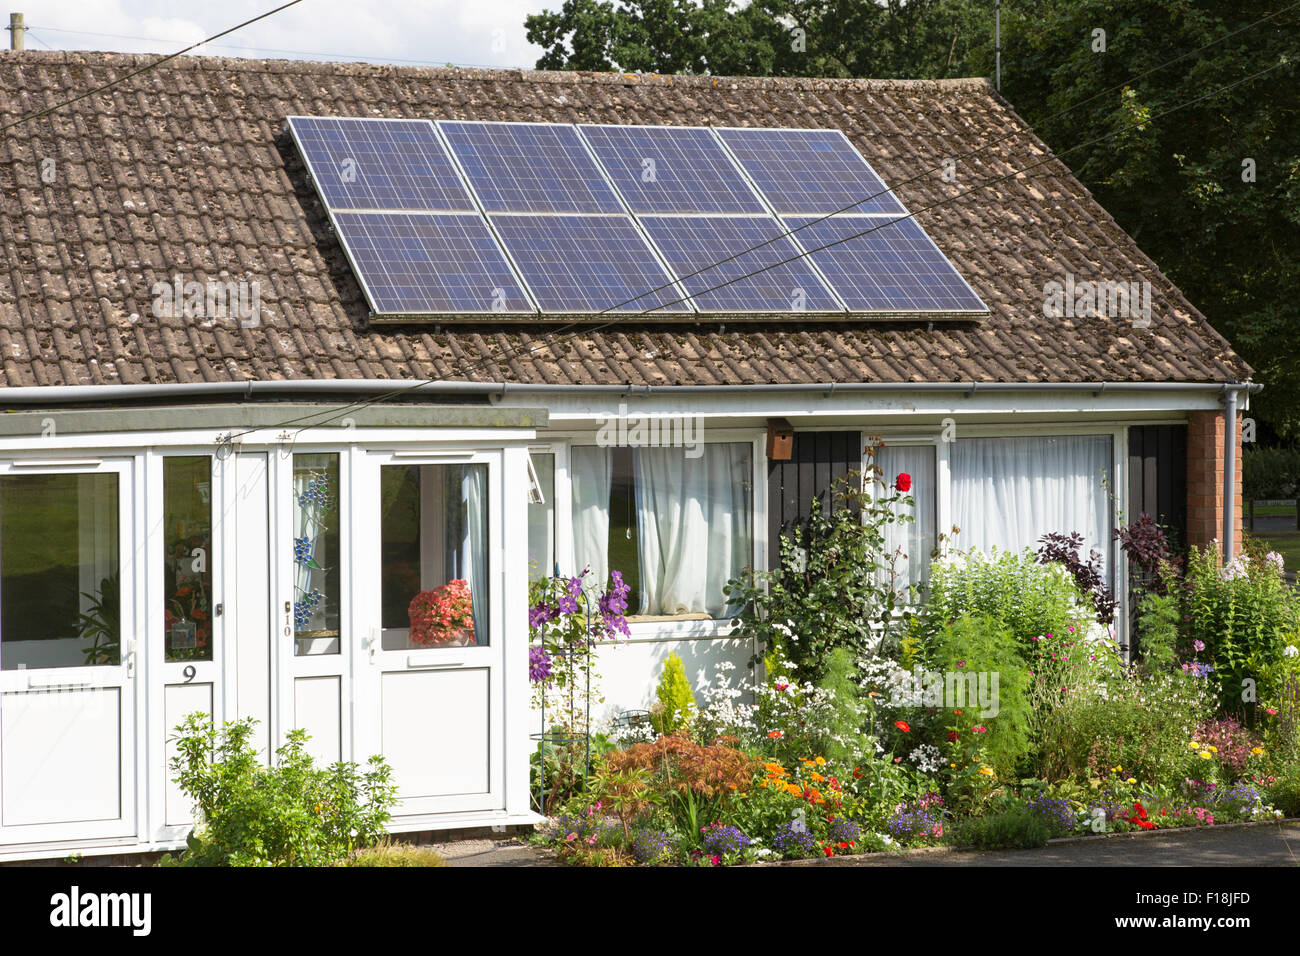 Solar panels on retirement bungalows, England, UK Stock Photo